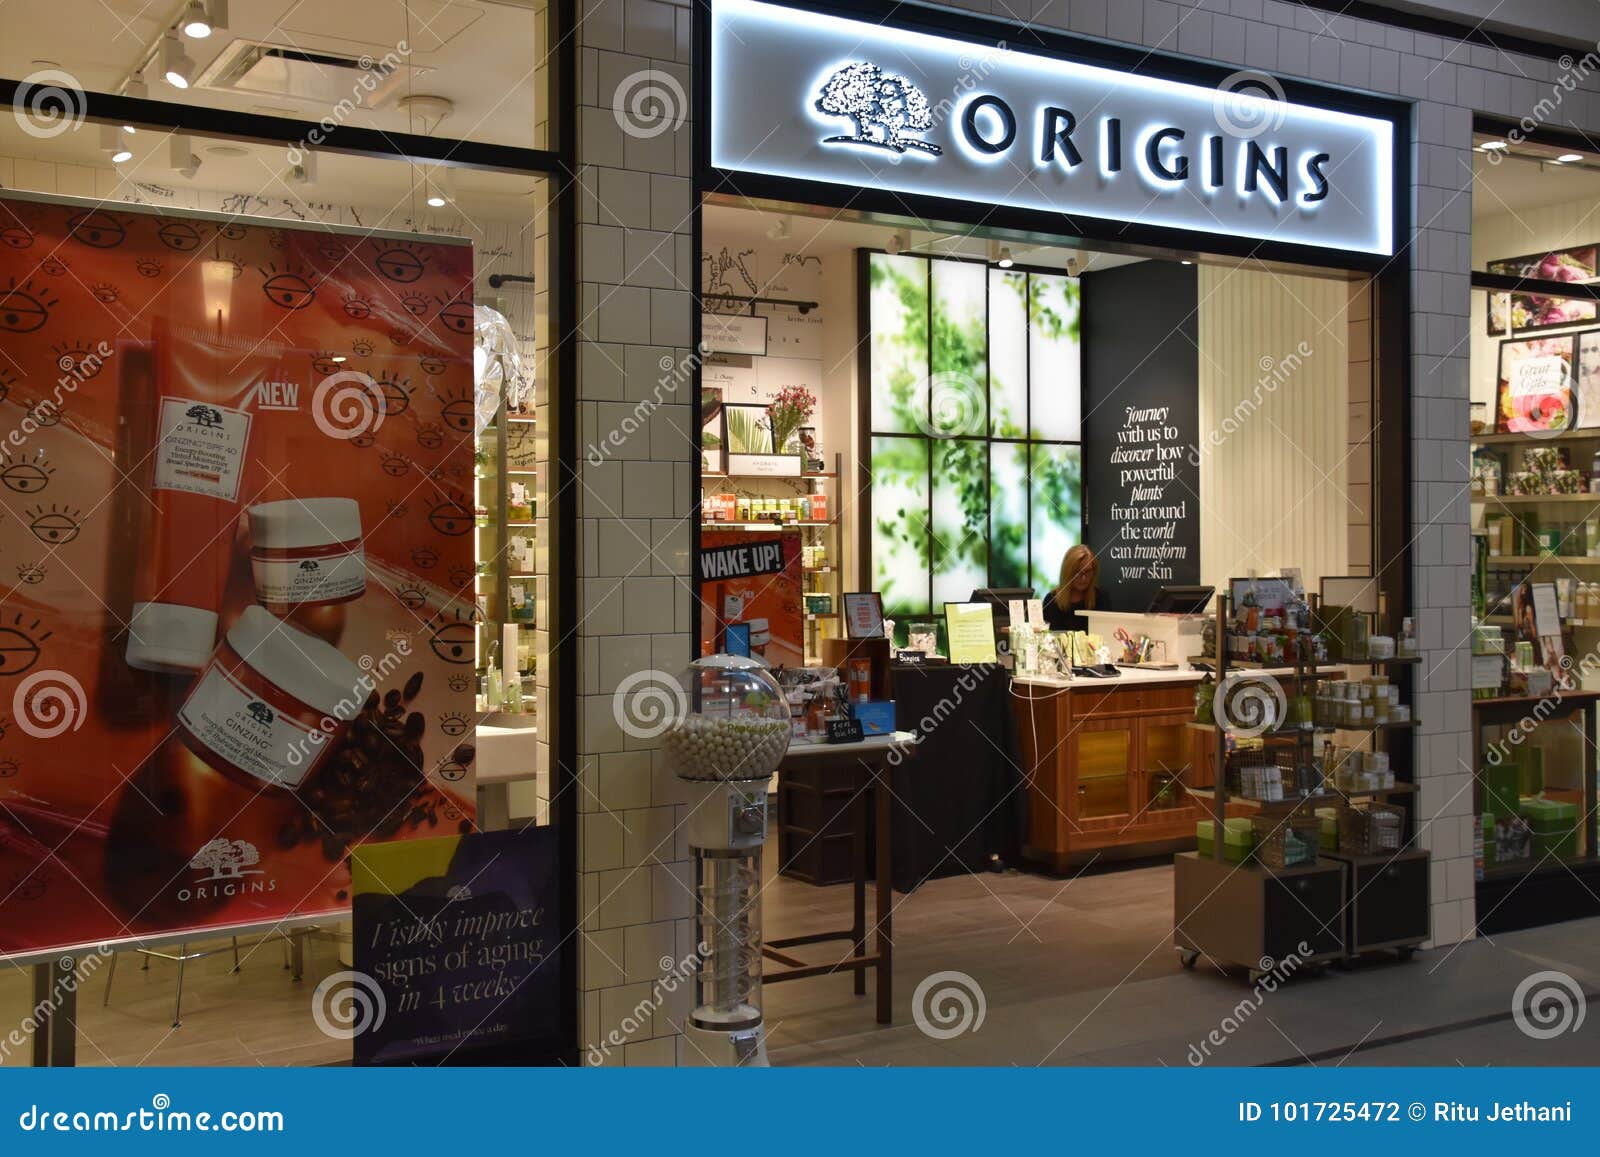 Origins Store At The Galleria In Edina, Minnesota ...